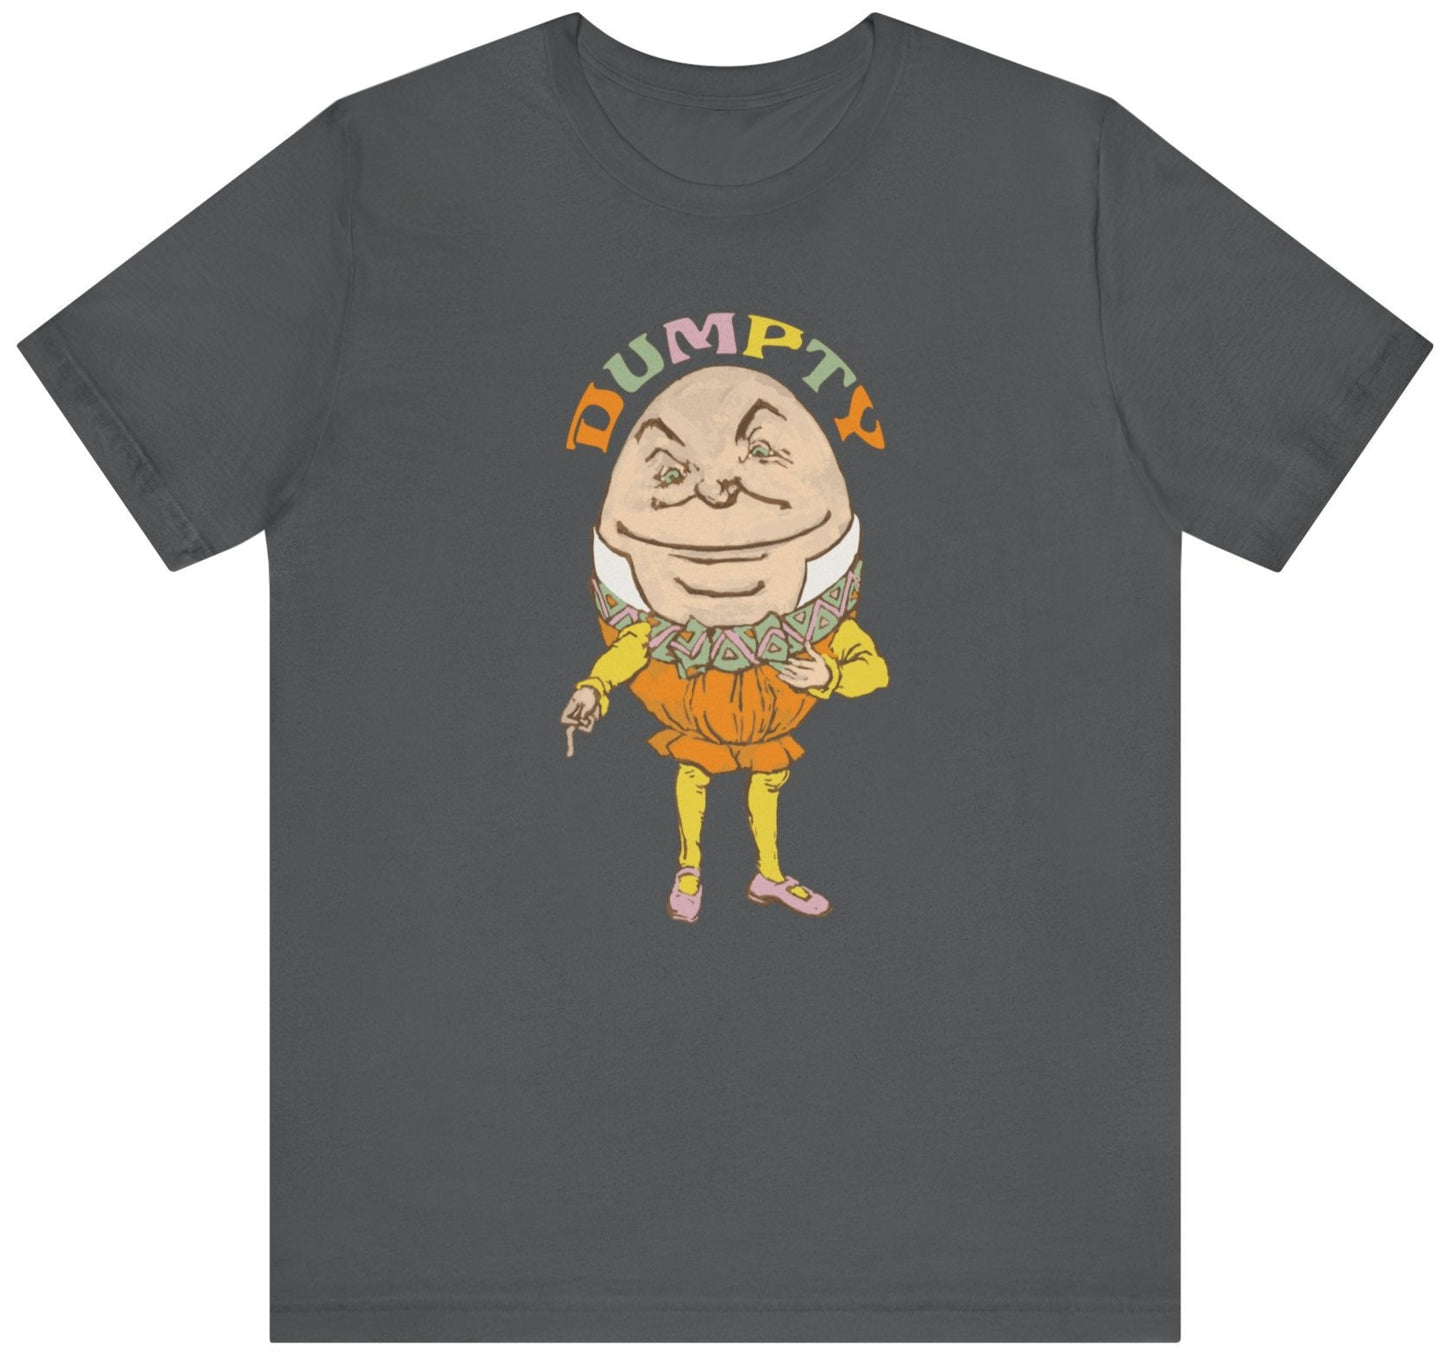 Humpty Dumpty t shirt